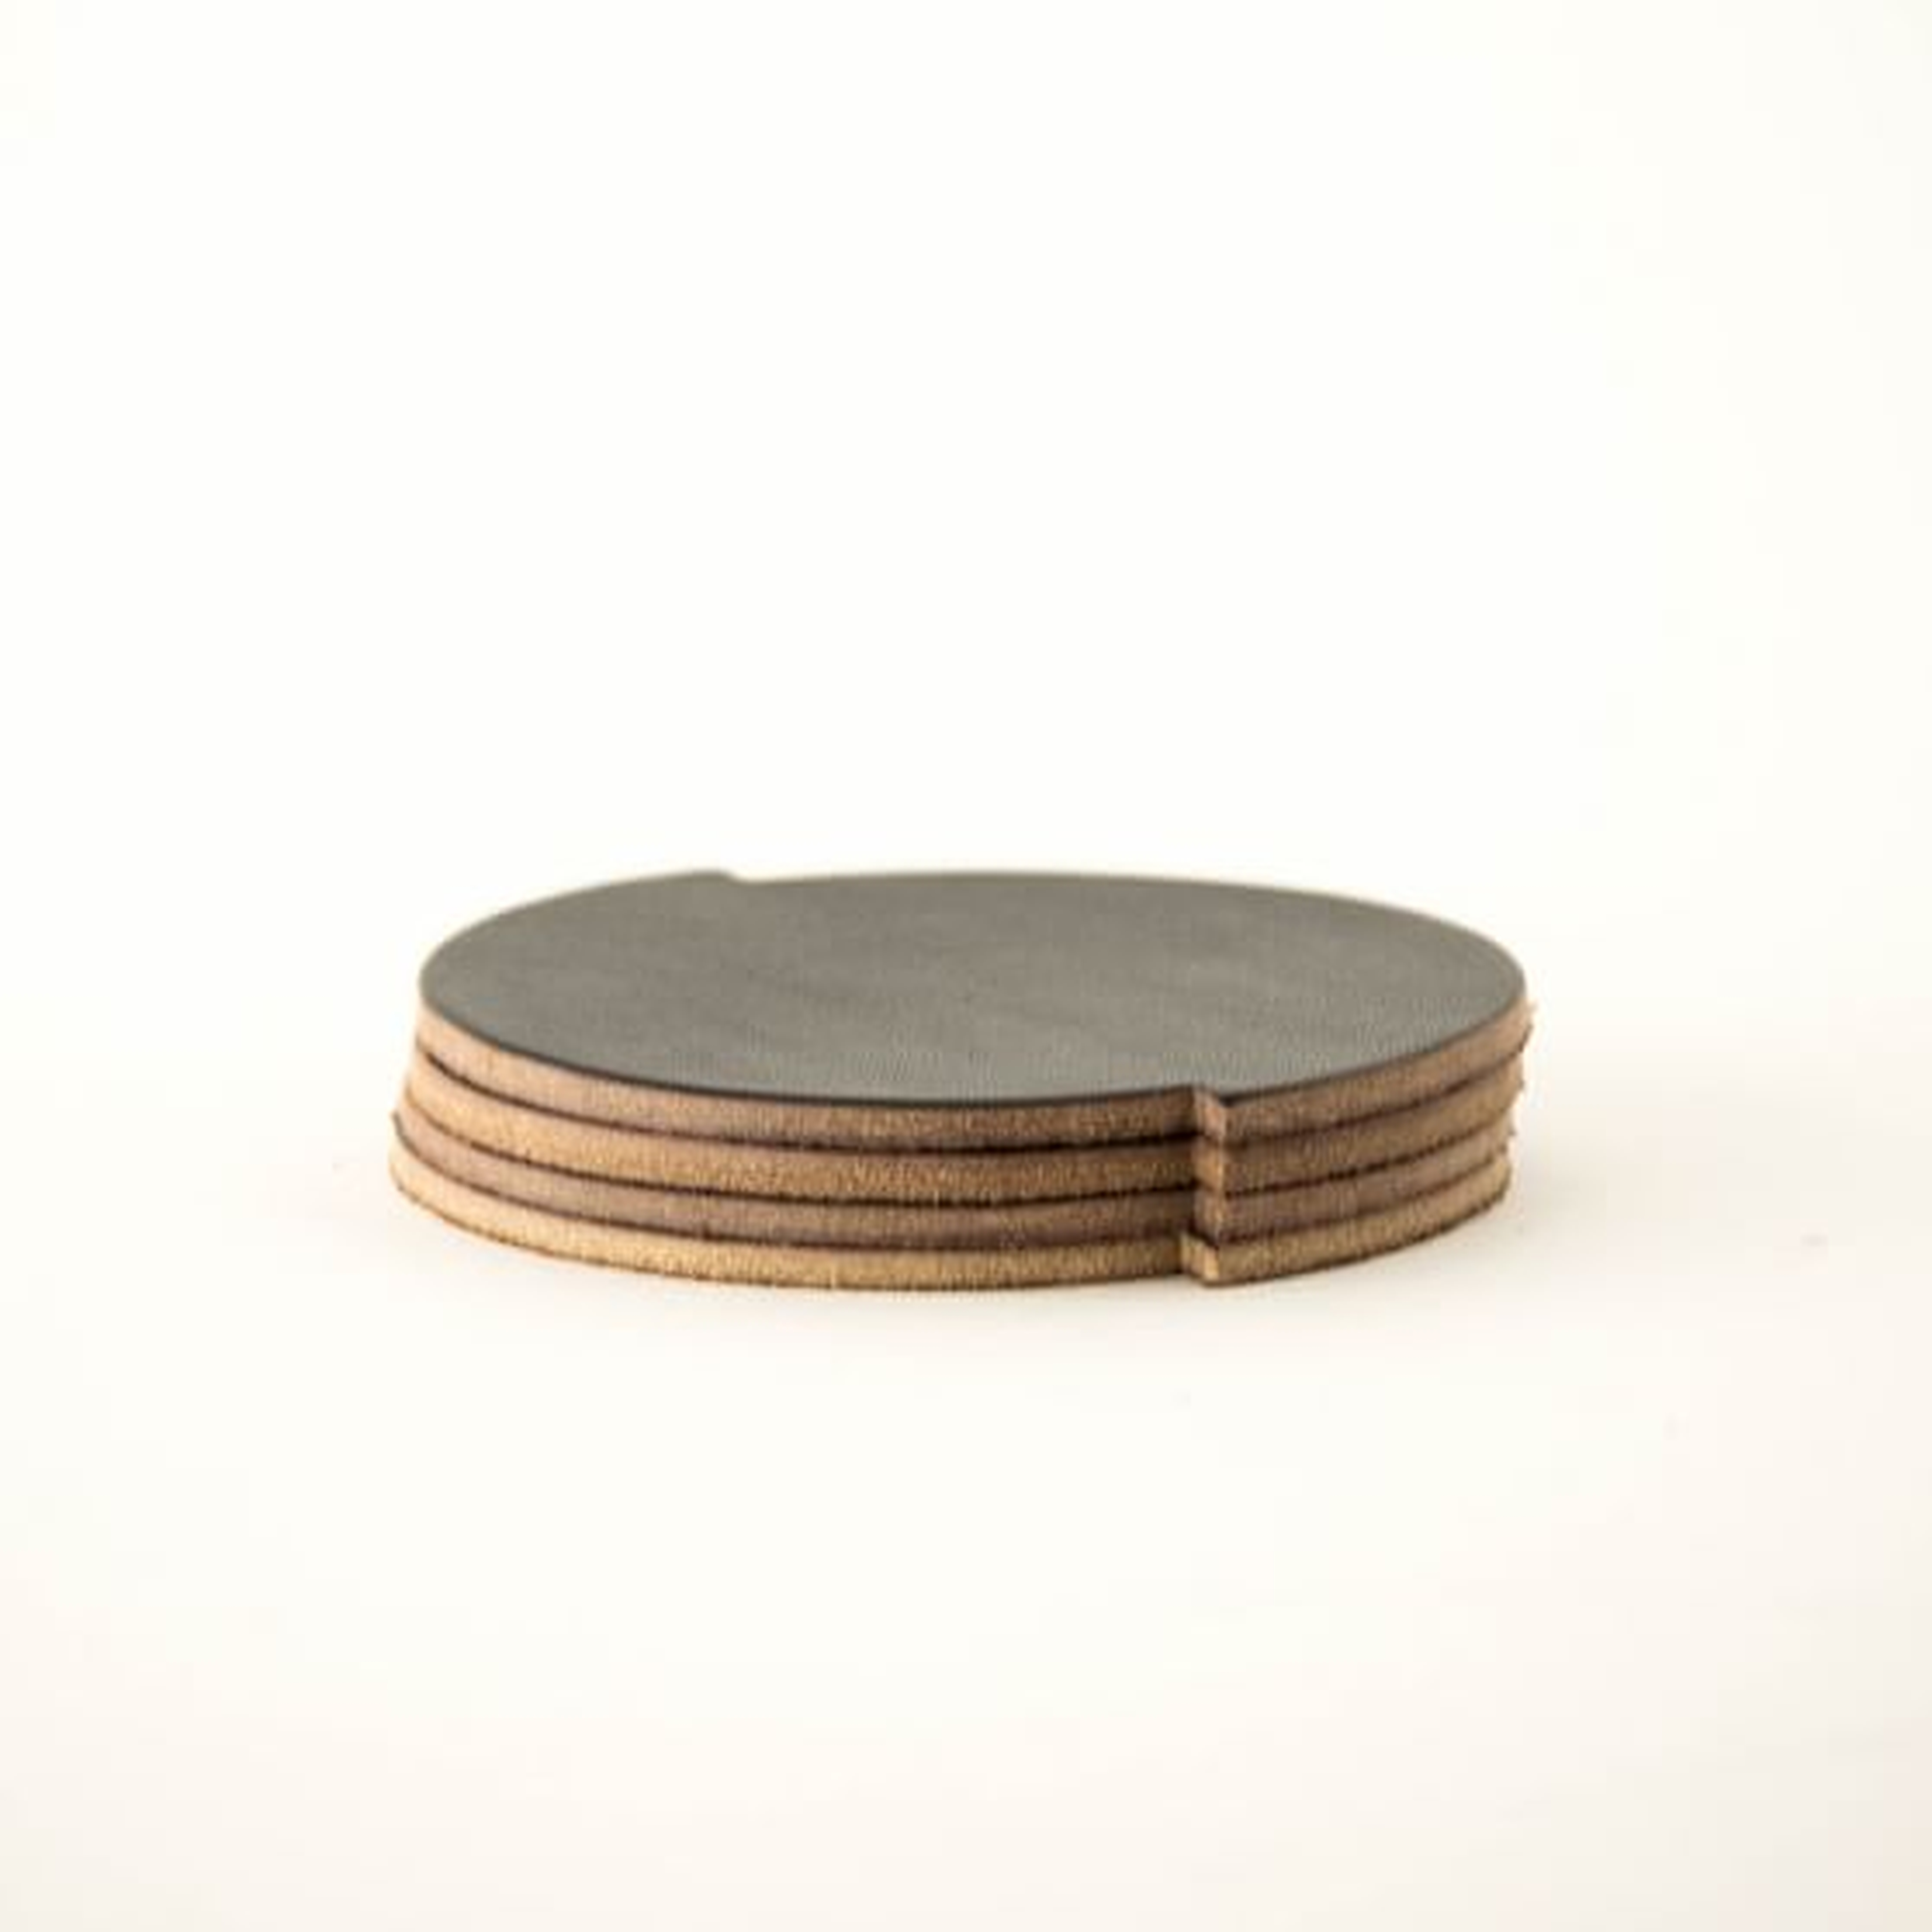 Split Circle Leather Coasters, Set of 4, Dark Brown - West Elm